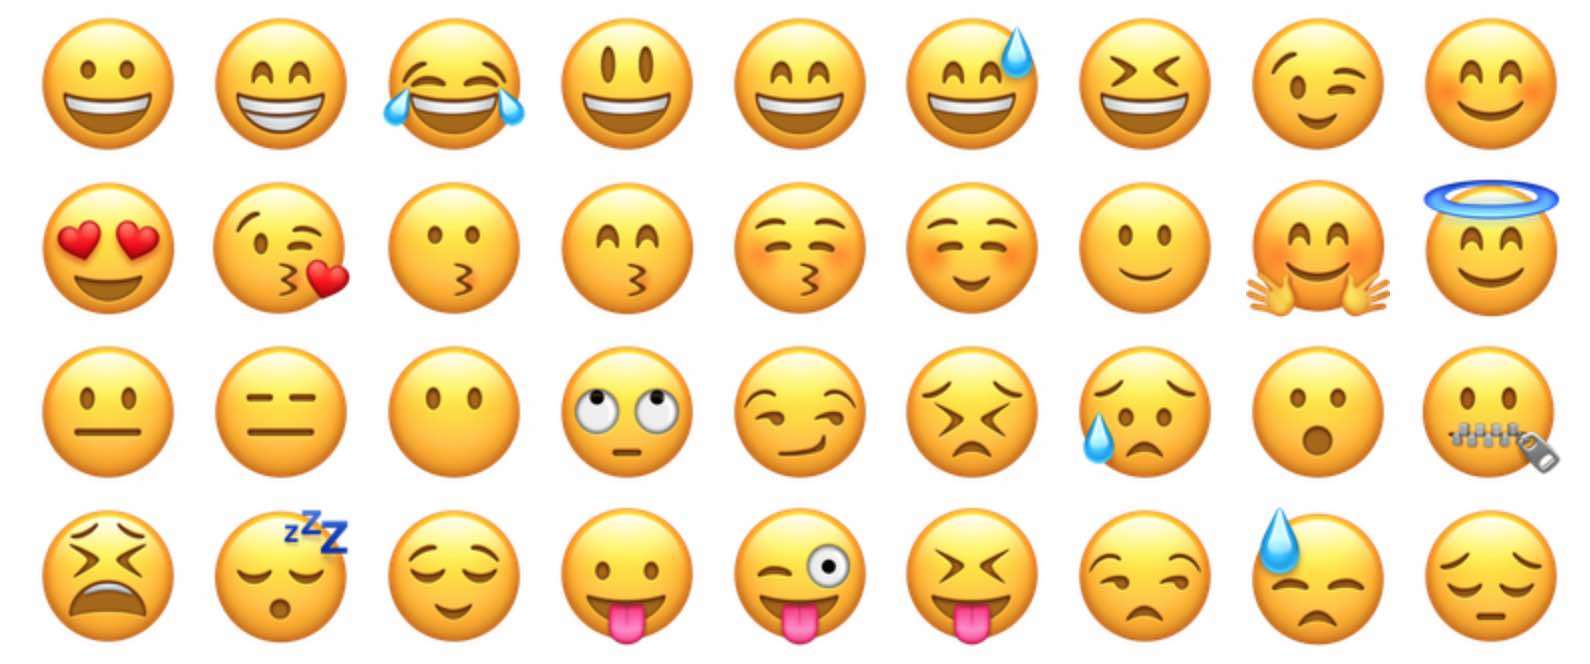 Quins són els emojis més utilitzats a diferents països del món?